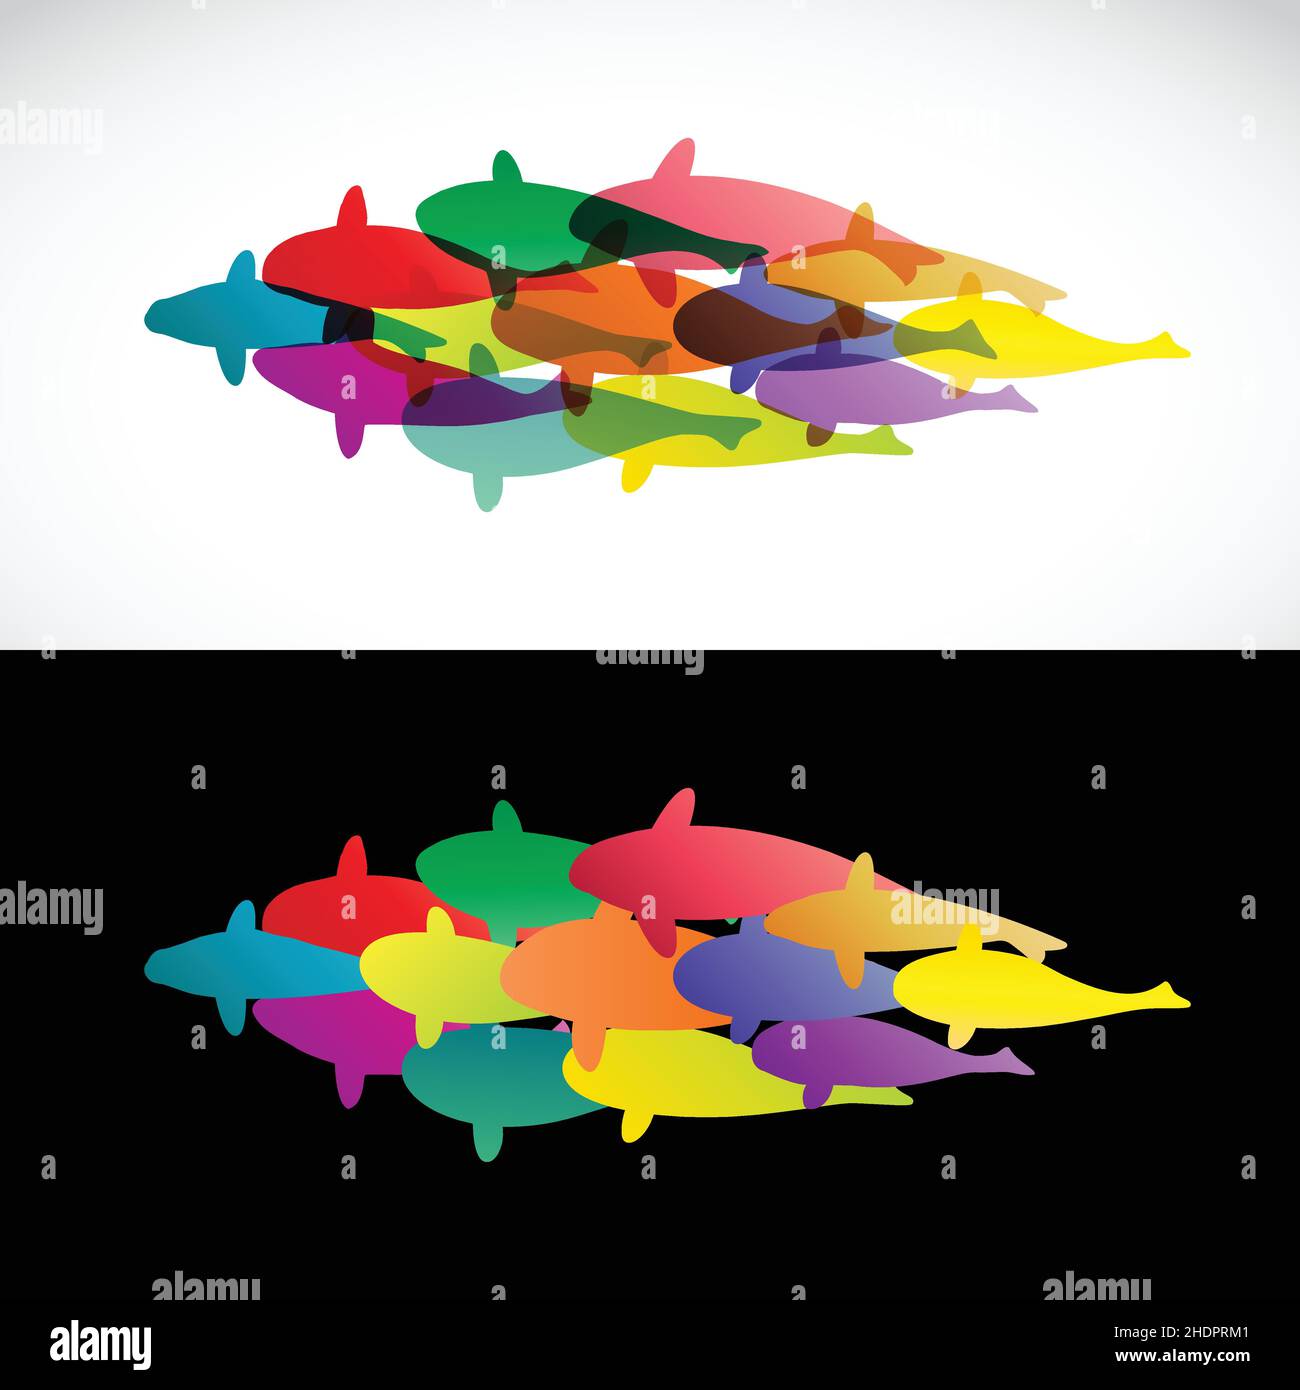 Diseño de peces sobre fondo blanco y fondo negro - Vector Illustration, koi. Ilustración de vector en capas fácil de editar. Ilustración del Vector